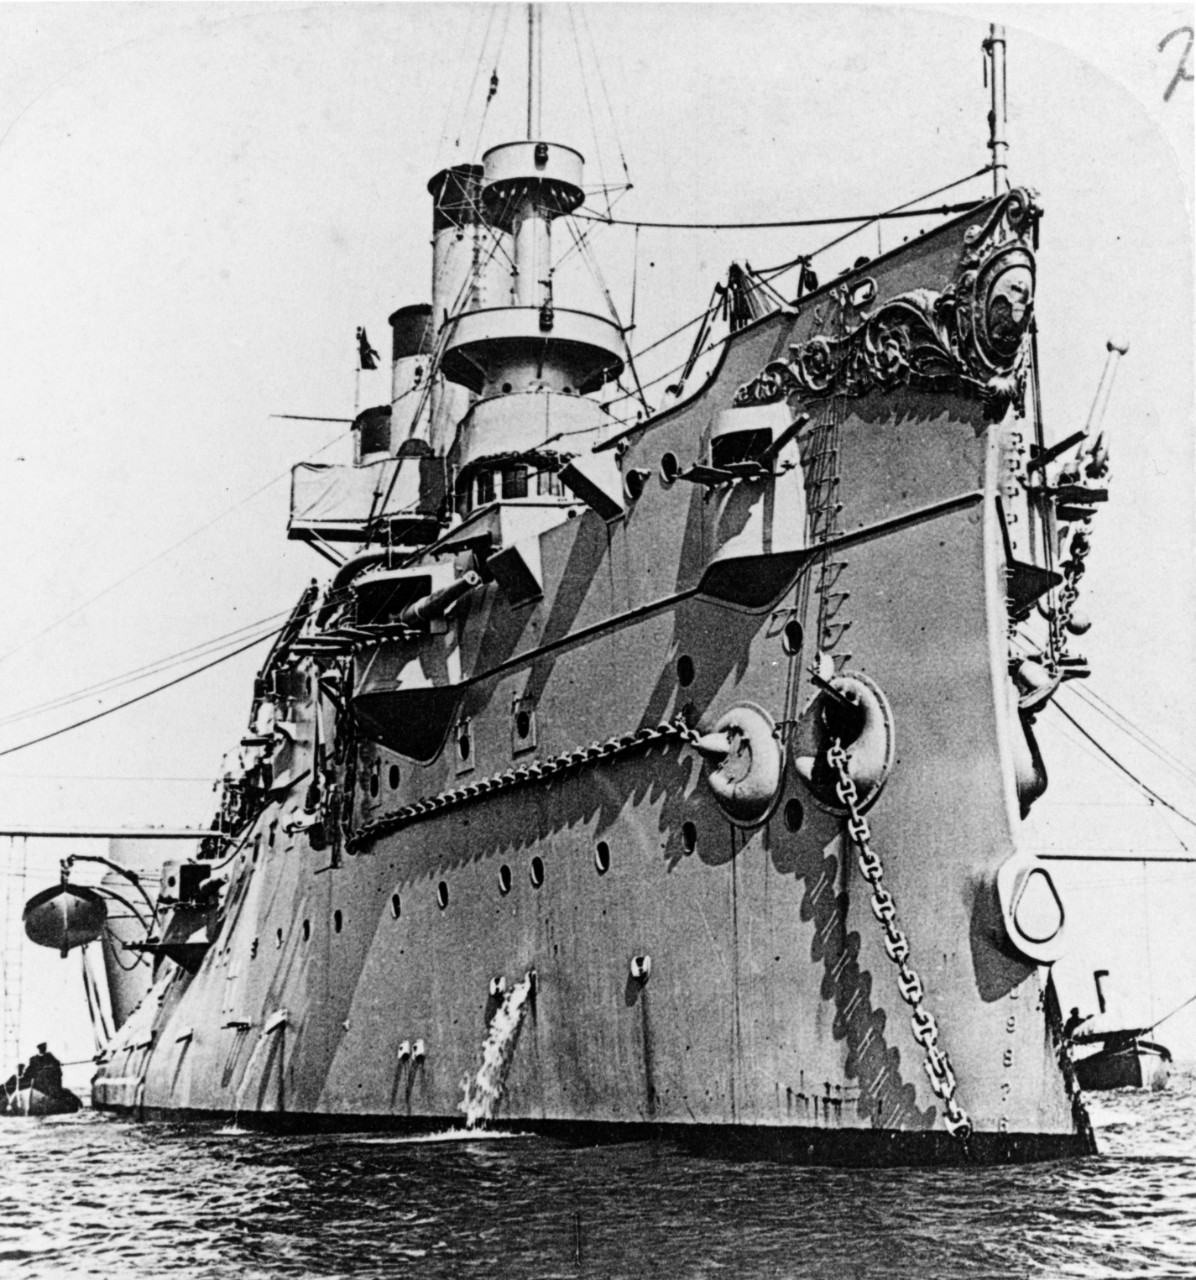 USS BROOKLYN (CA-3)